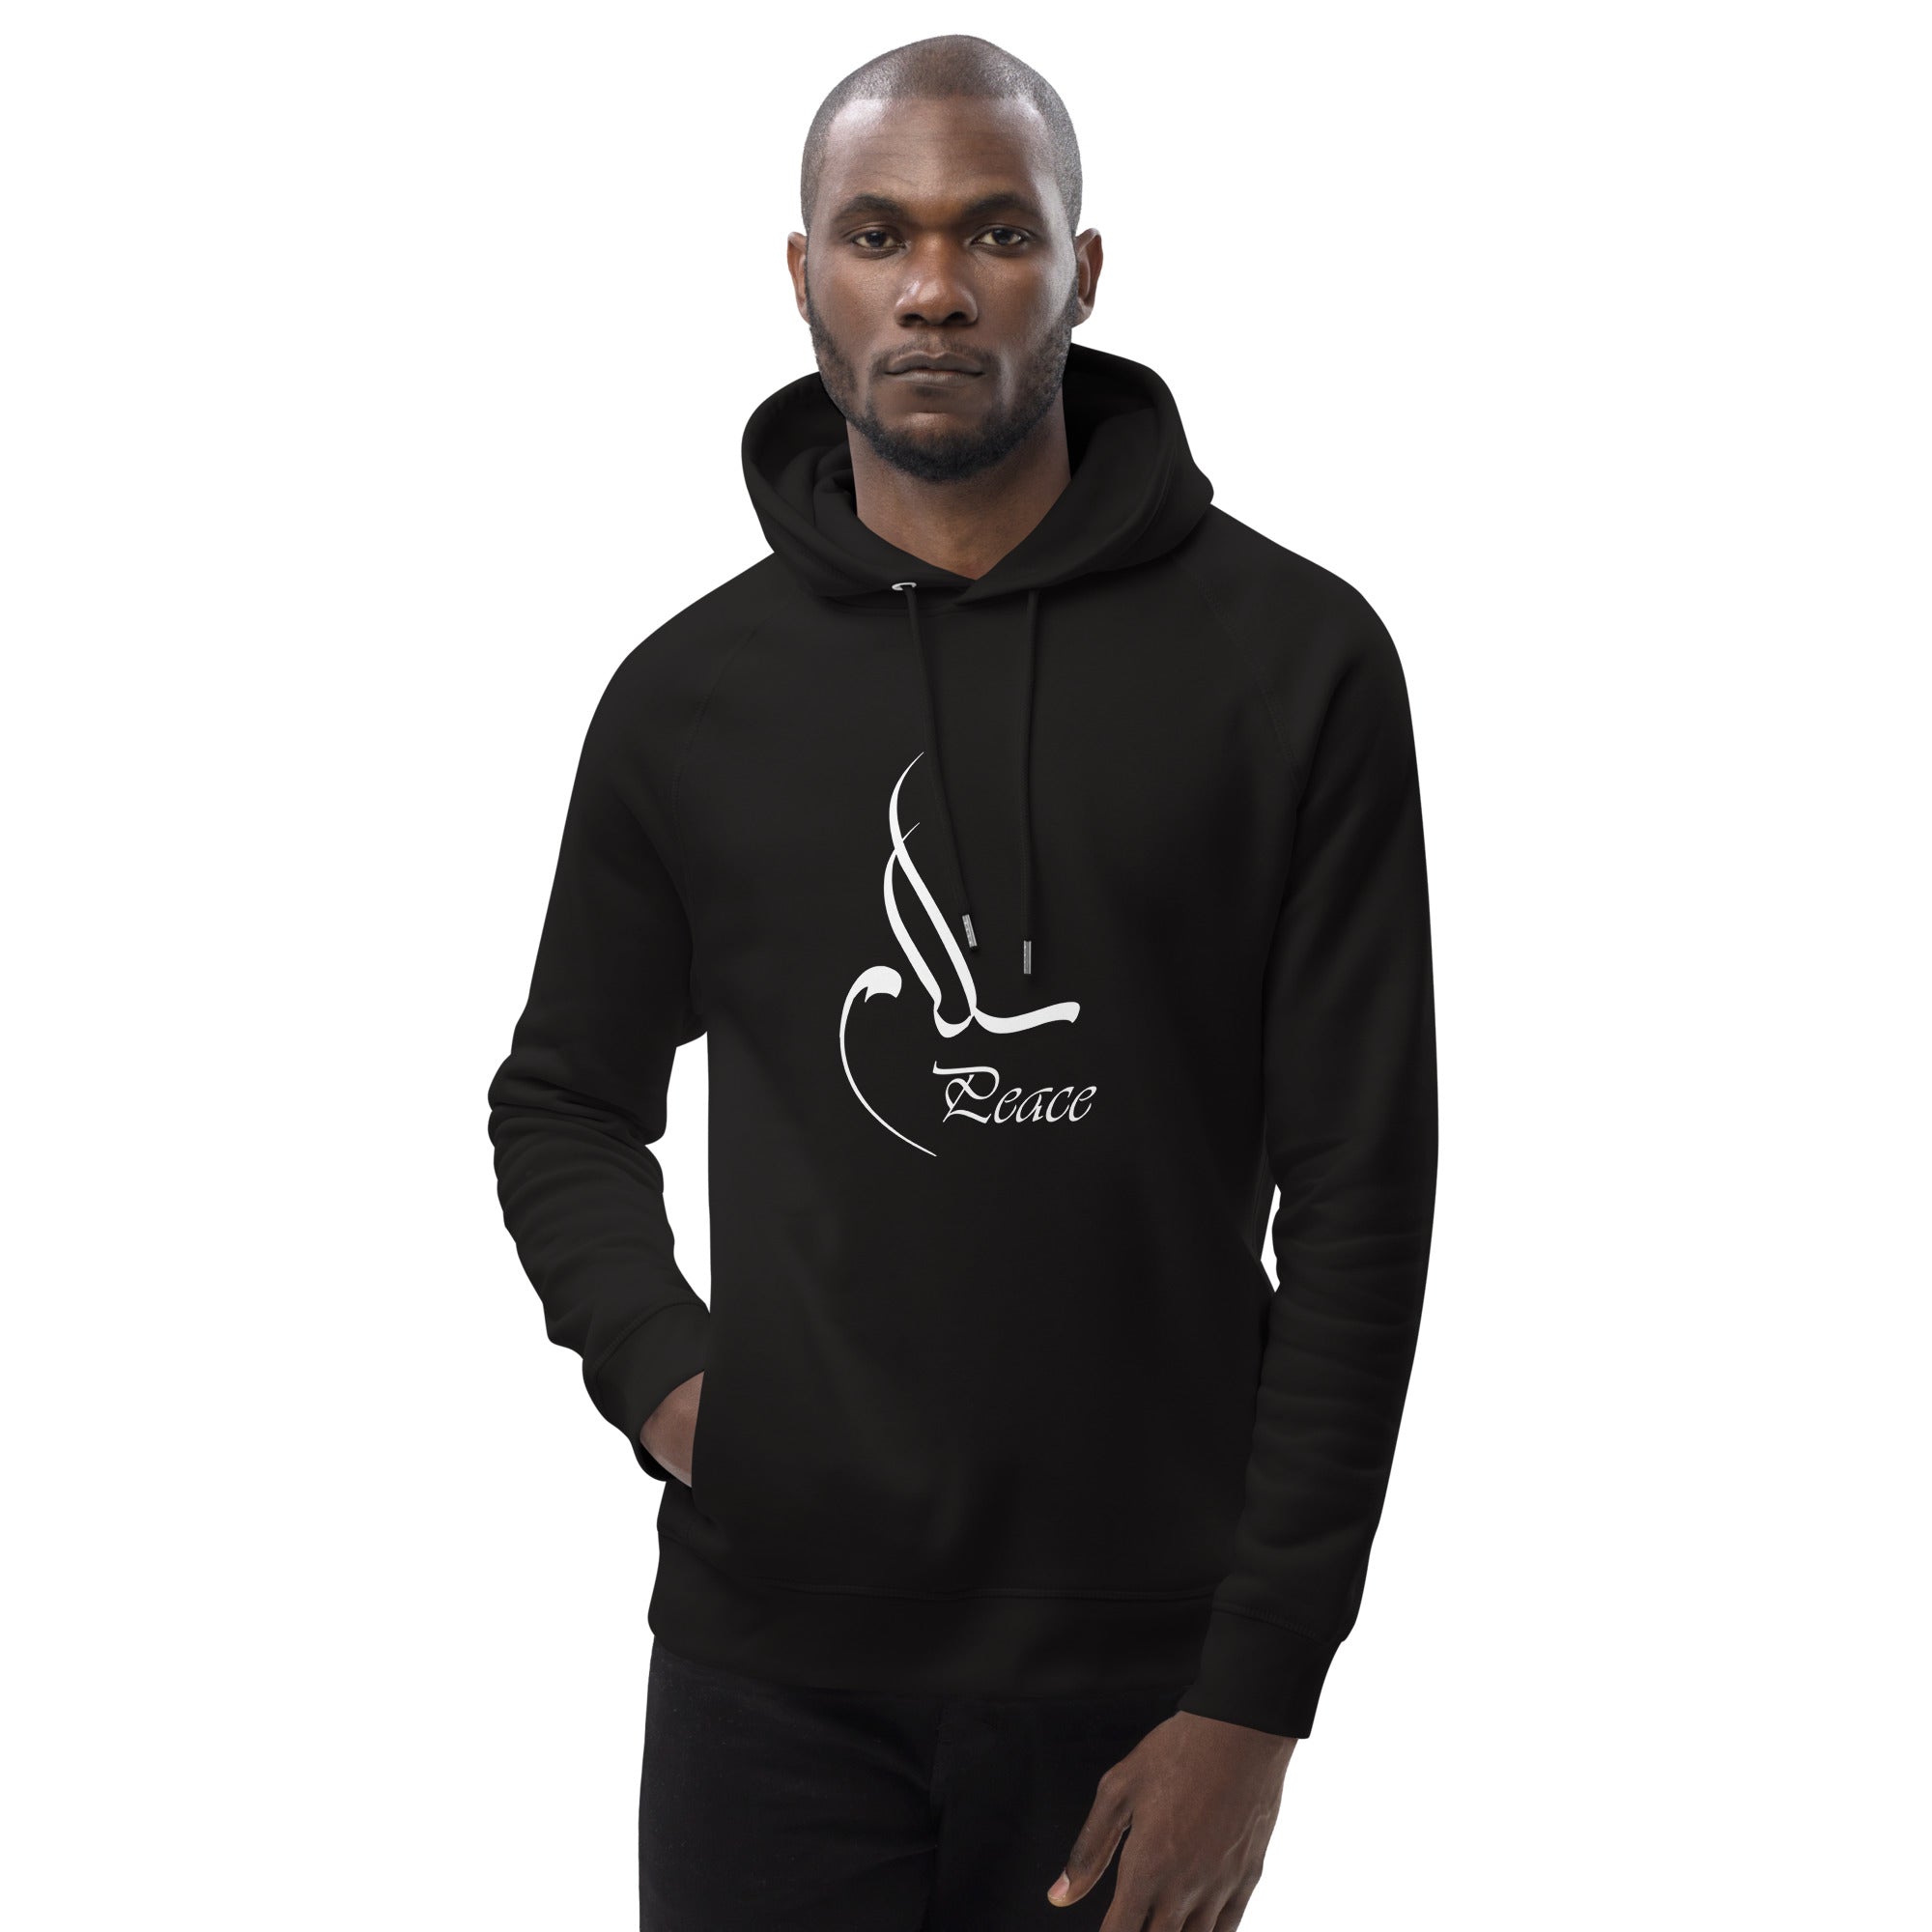 Peace hoodie